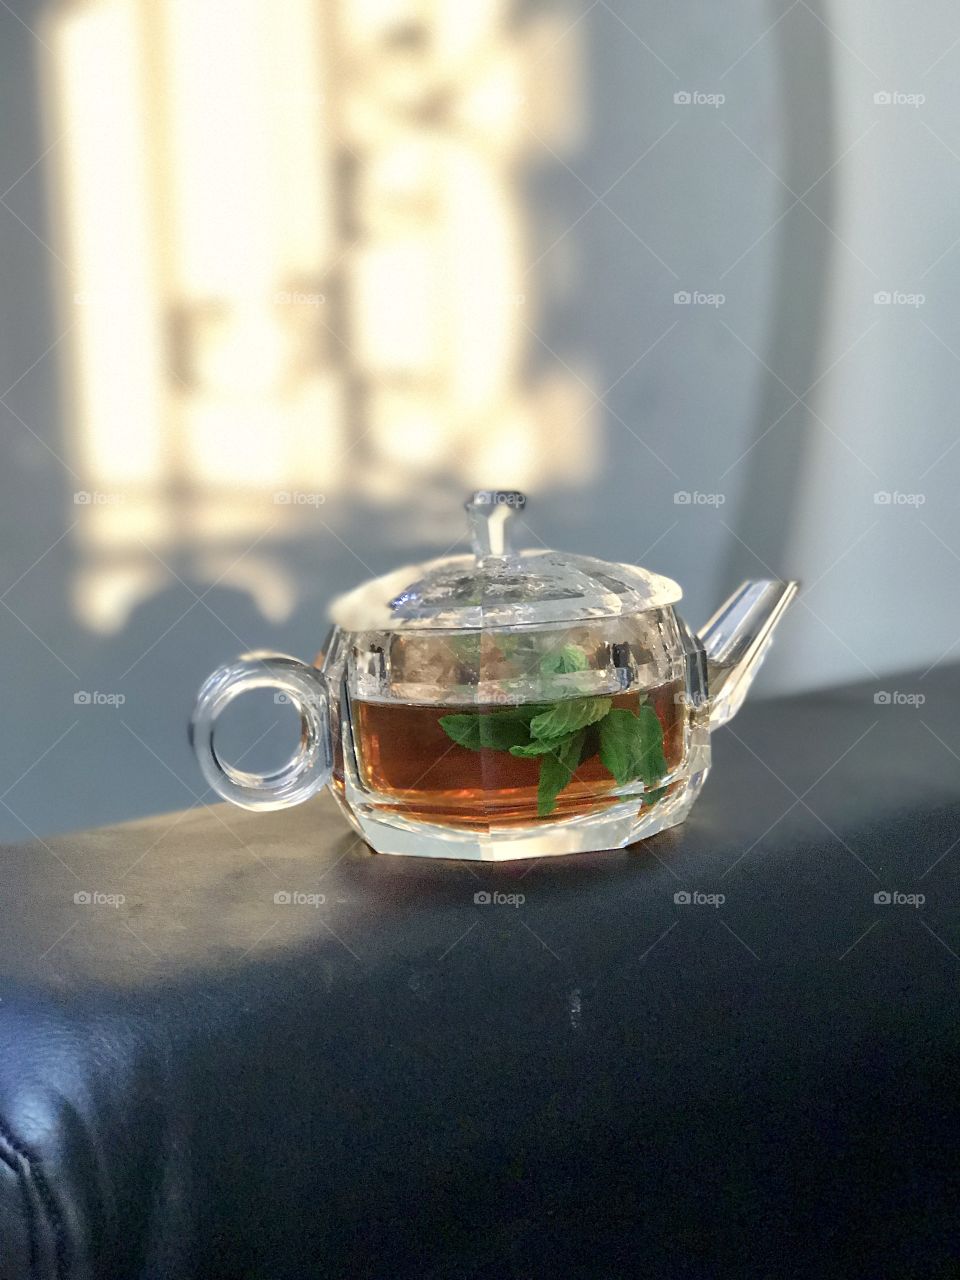 Close-up of teapot containing tea